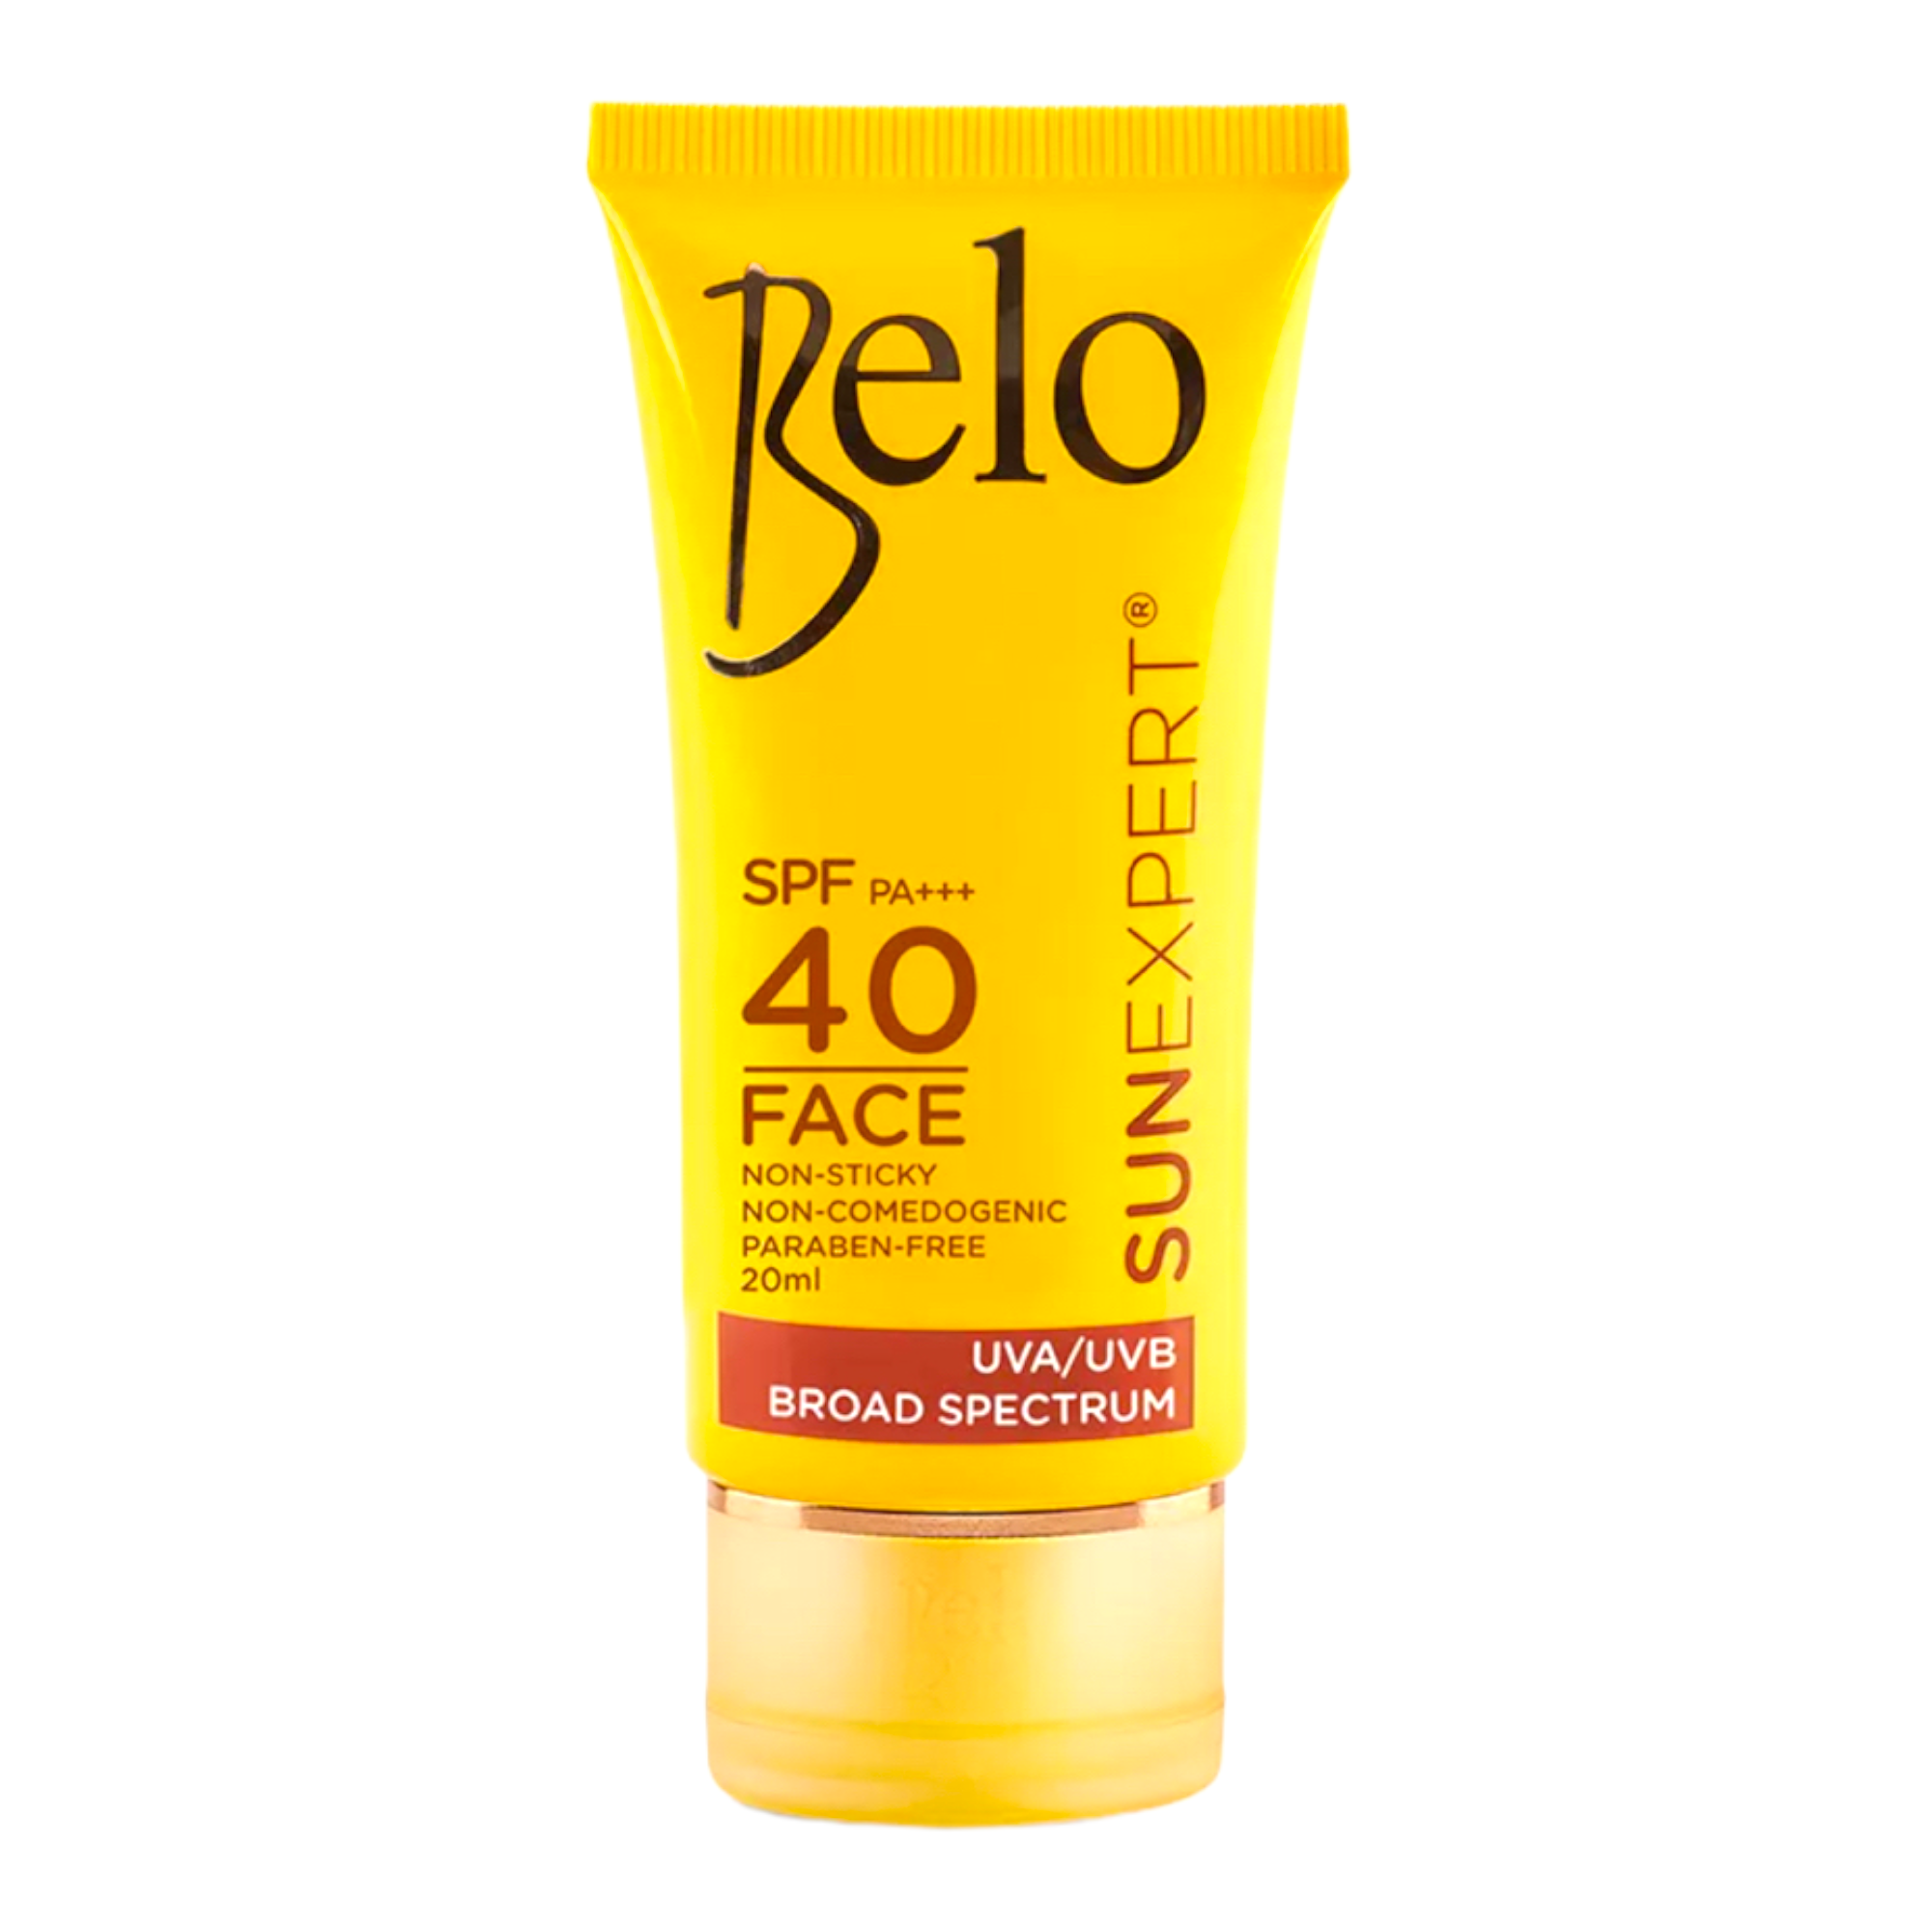 Belo - SunExpert Face cover - Sunscreen SPF 40 - 50ml